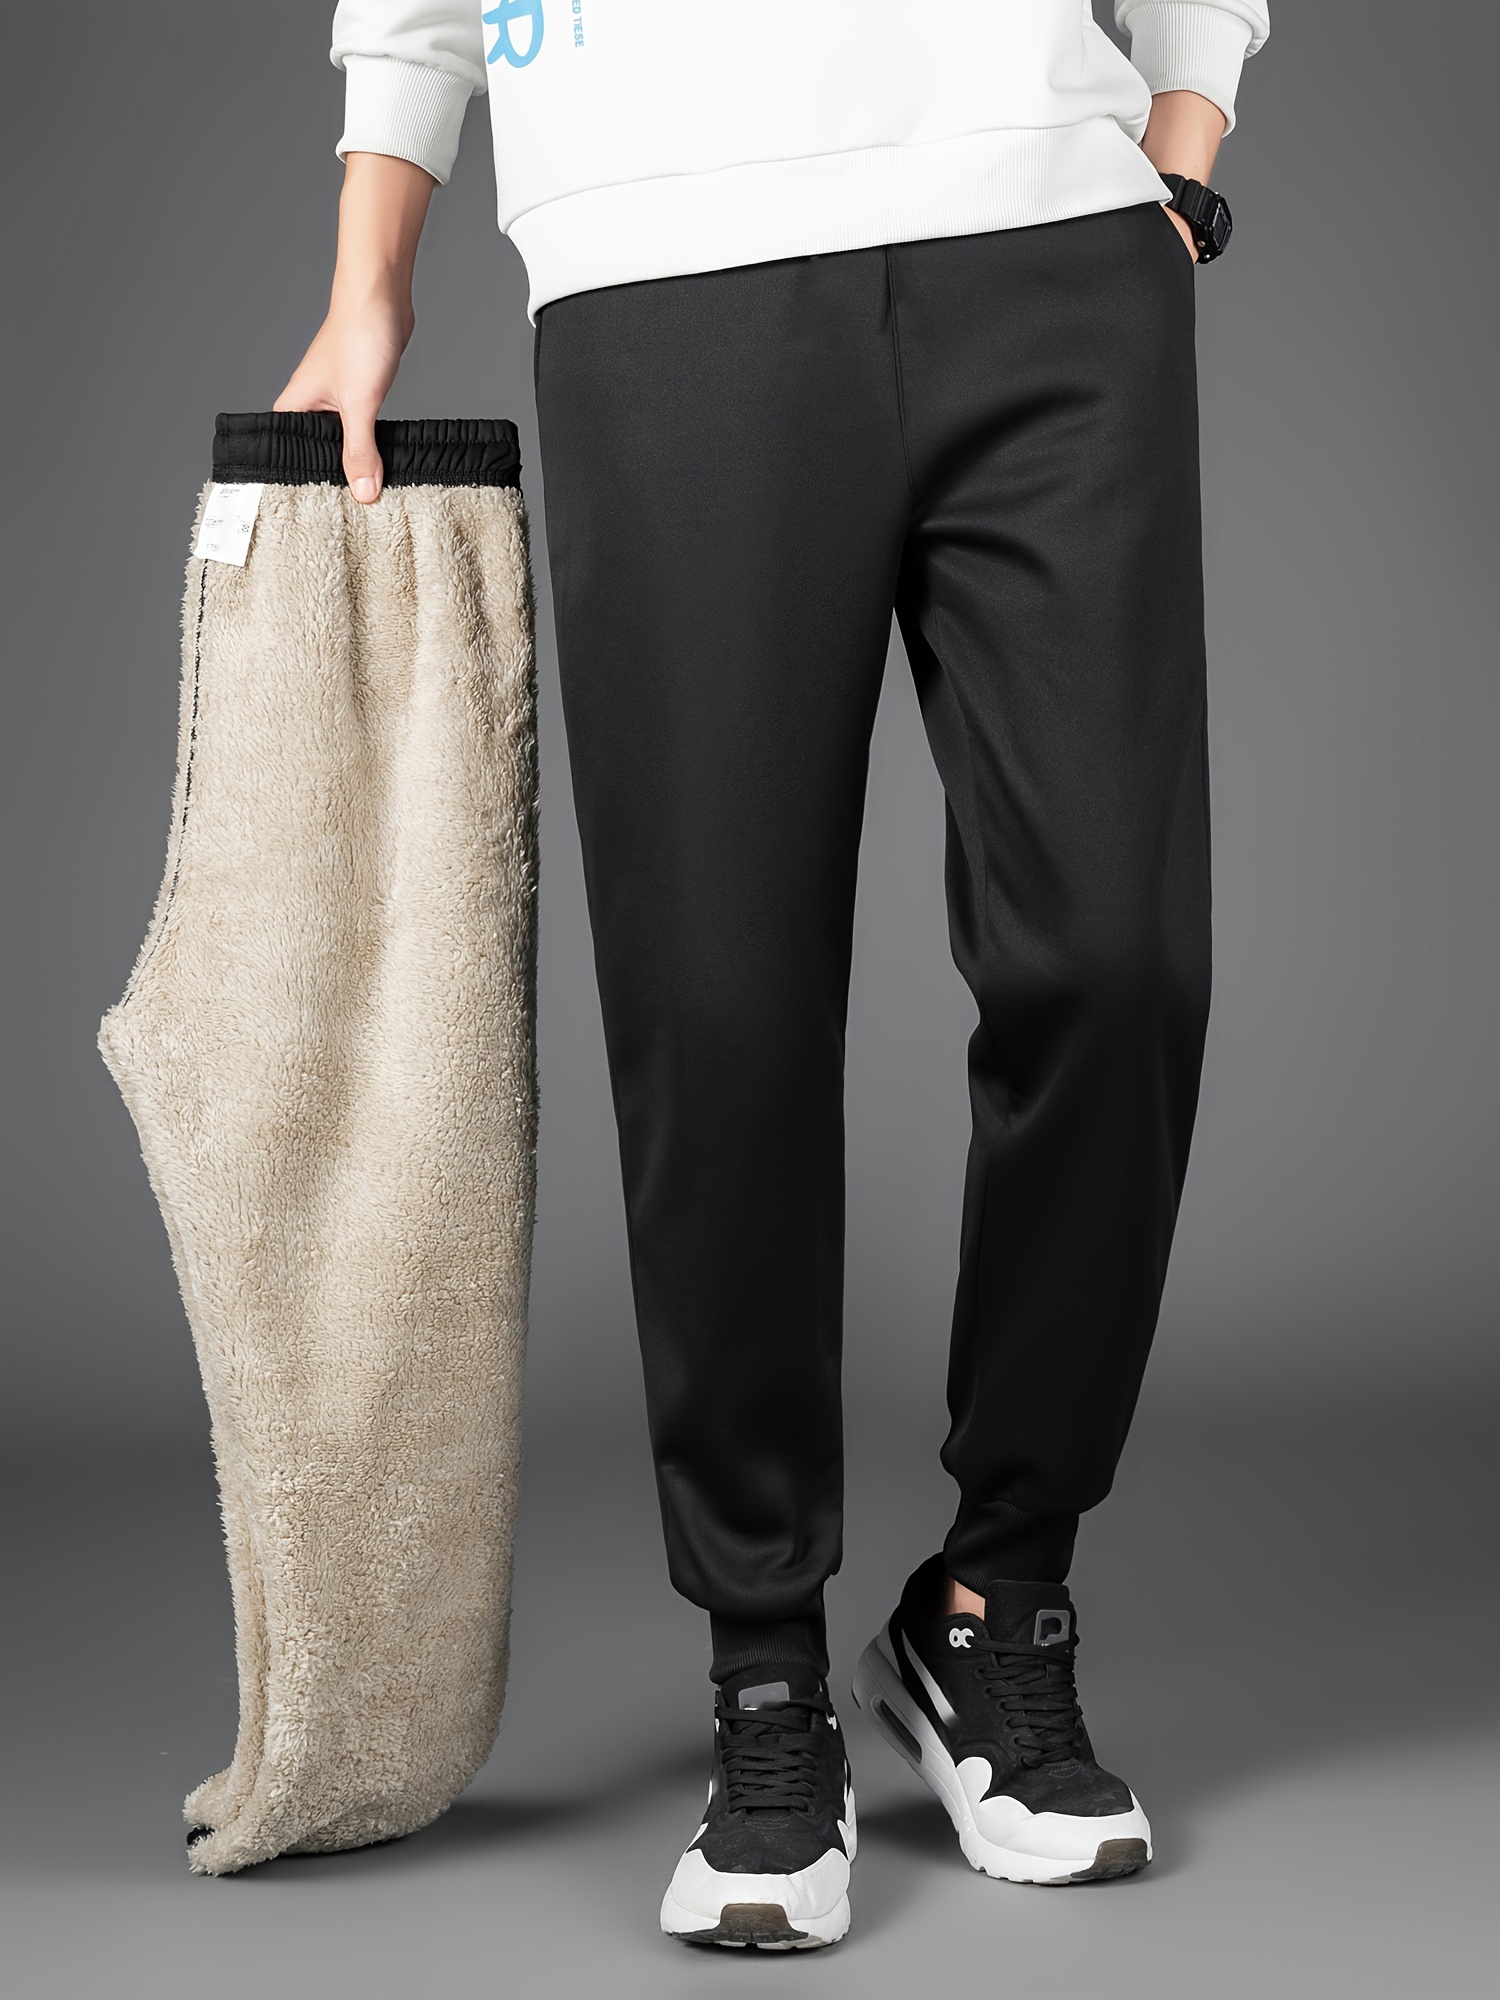 Pantalones Informales De Pana Gruesa Para Invierno Ajustados Elásticos A La  Moda